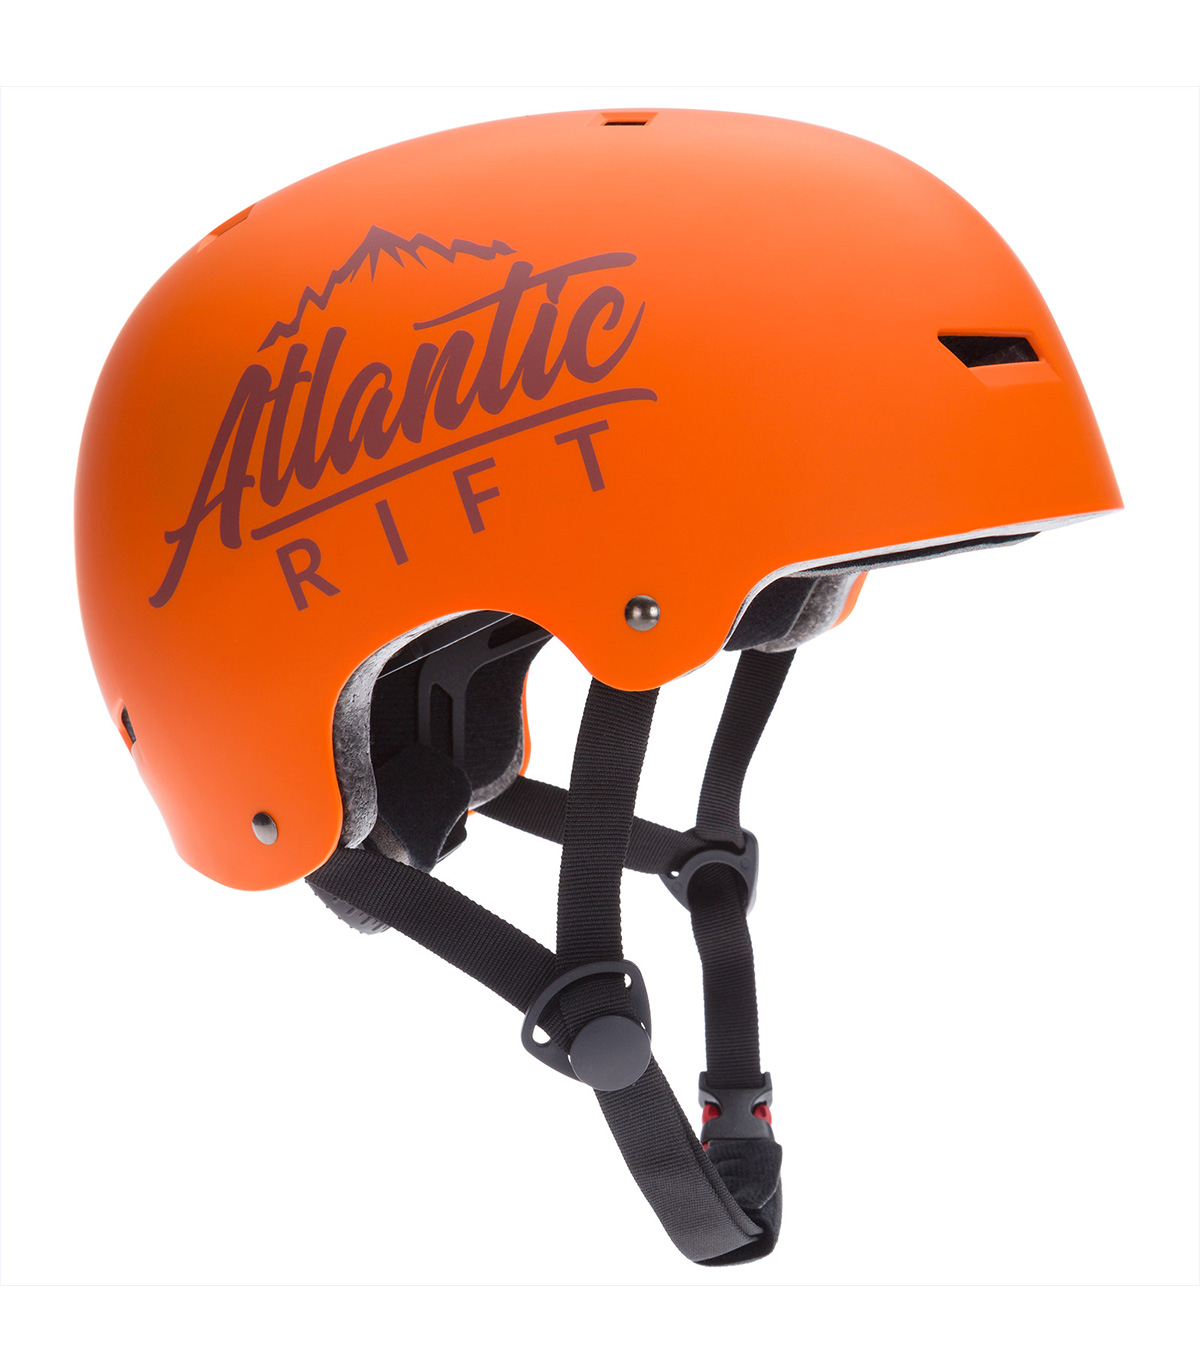 Casca protectie bicicleta/skateboard pentru copii, marime S, Atlantic Rift, Portocaliu